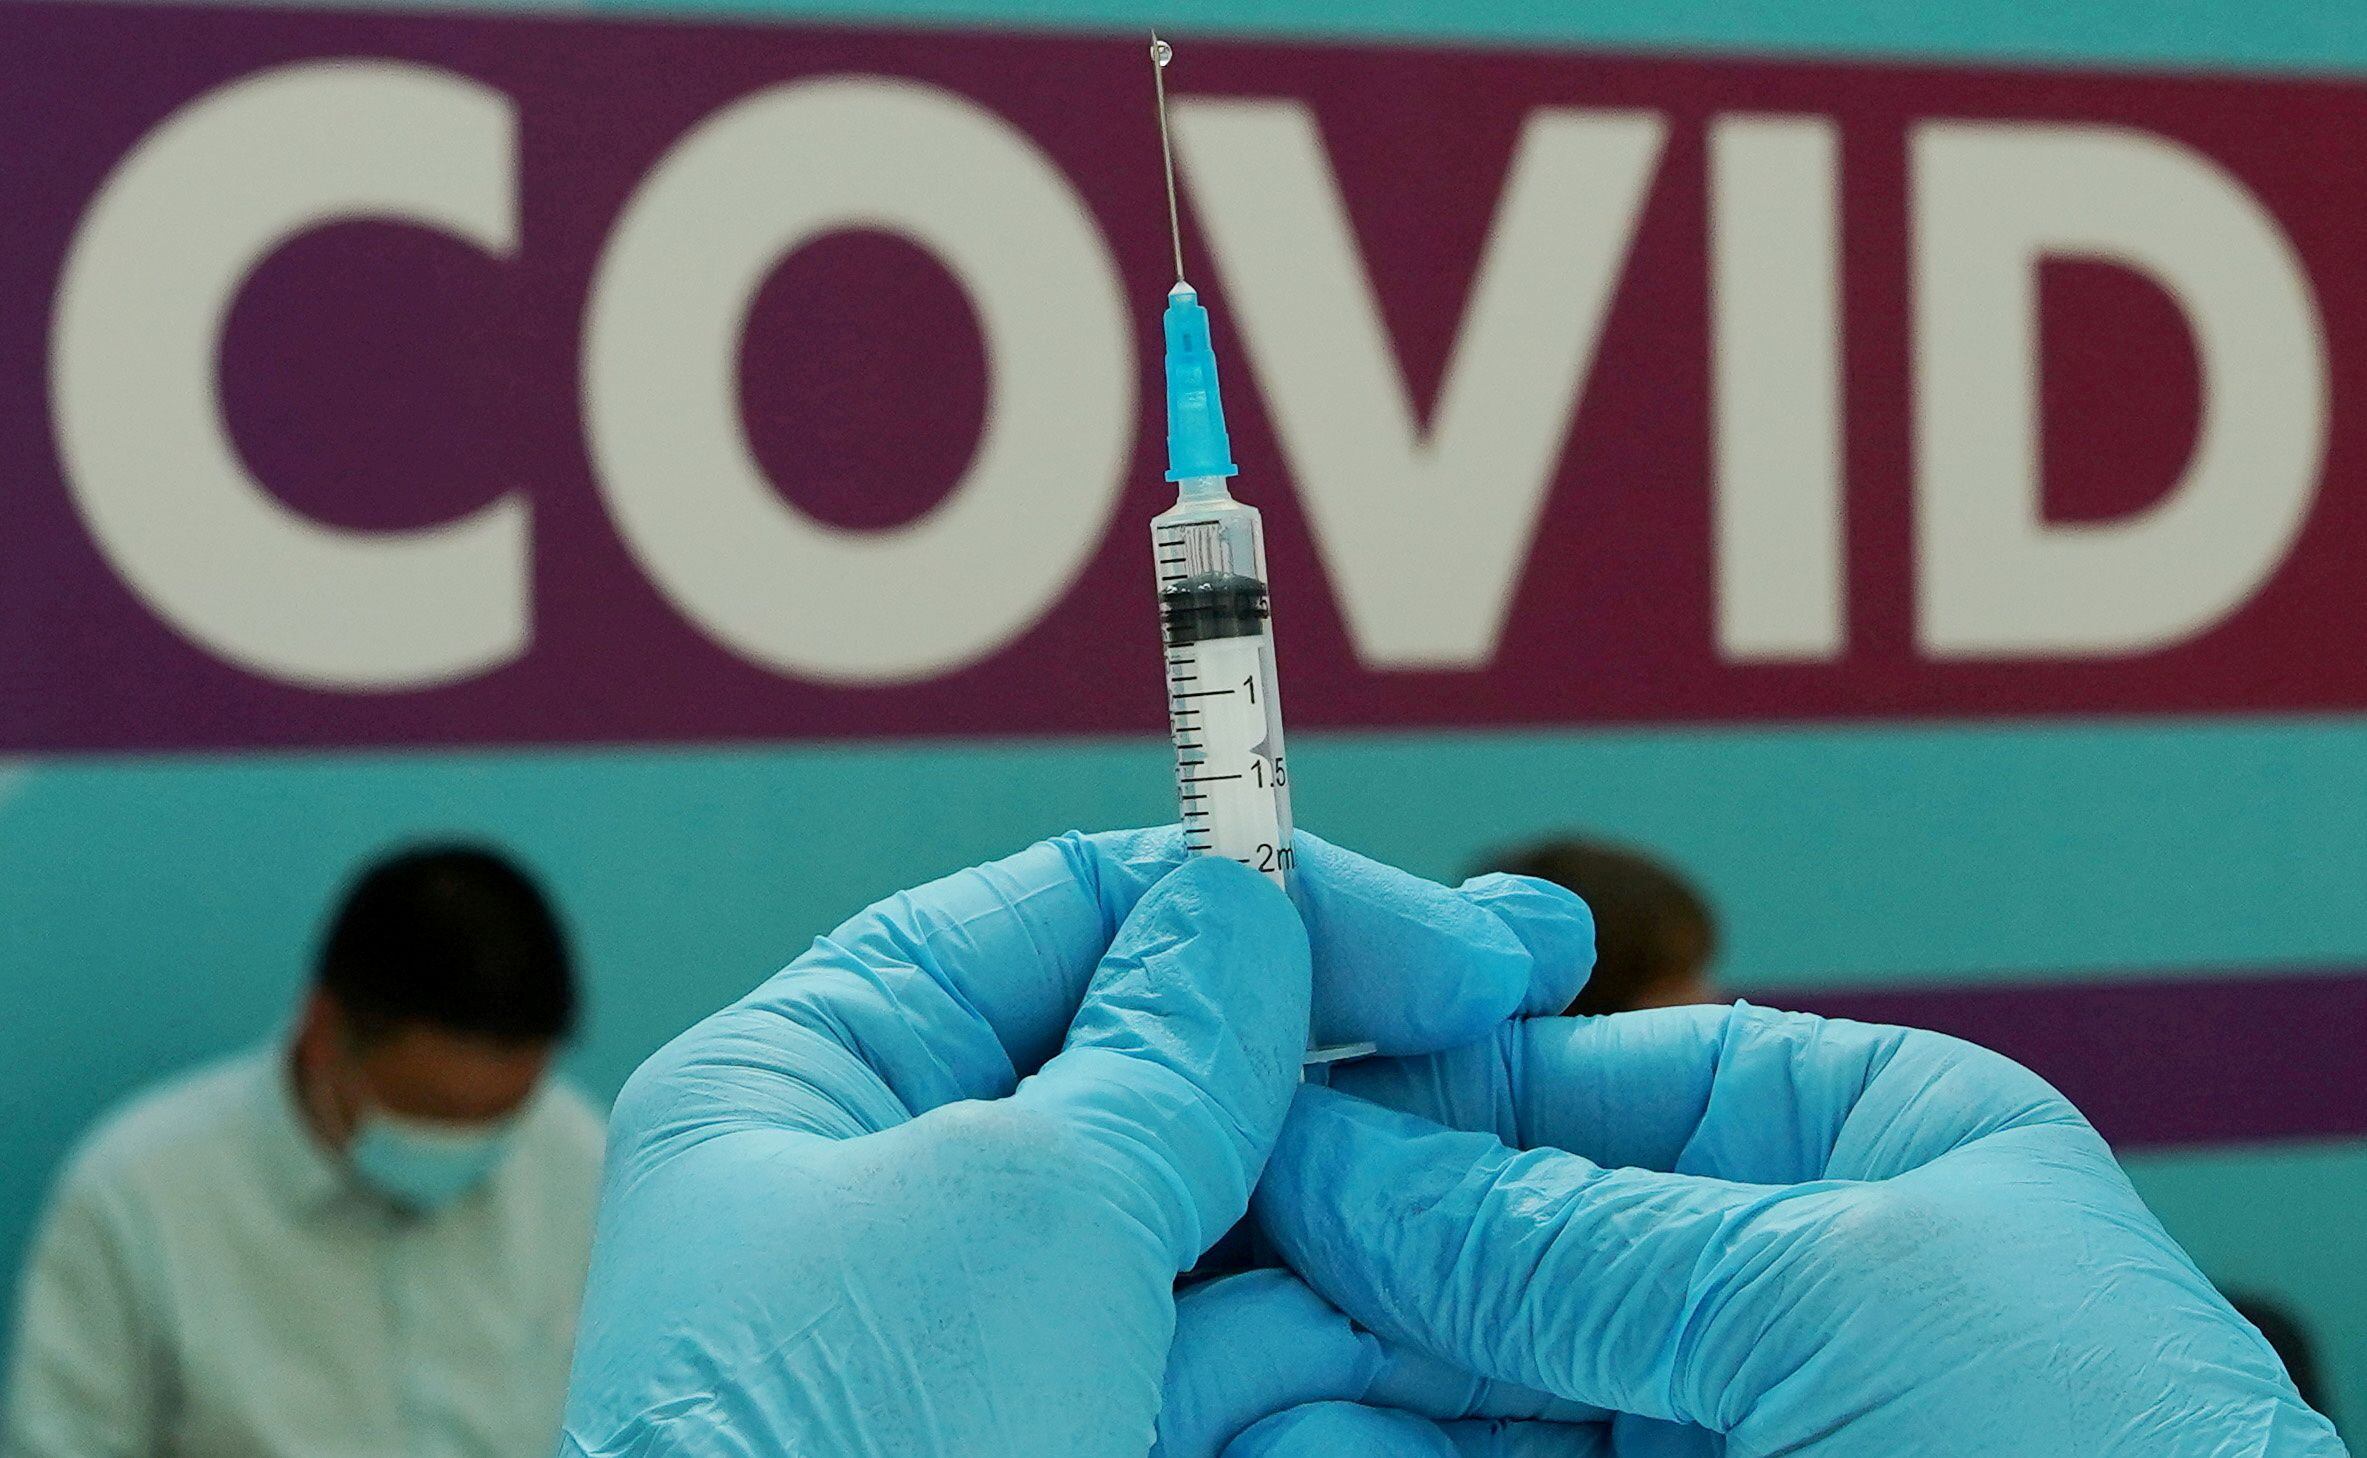 FOTO DE ARCHIVO: Un trabajador sanitario prepara una dosis de la vacuna Sputnik V (Gam-COVID-Vac) contra la enfermedad del coronavirus (COVID-19) en un centro de vacunación en Gostiny Dvor en Moscú, Rusia, el 6 de julio de 2021. REUTERS/Tatyana Makeyeva